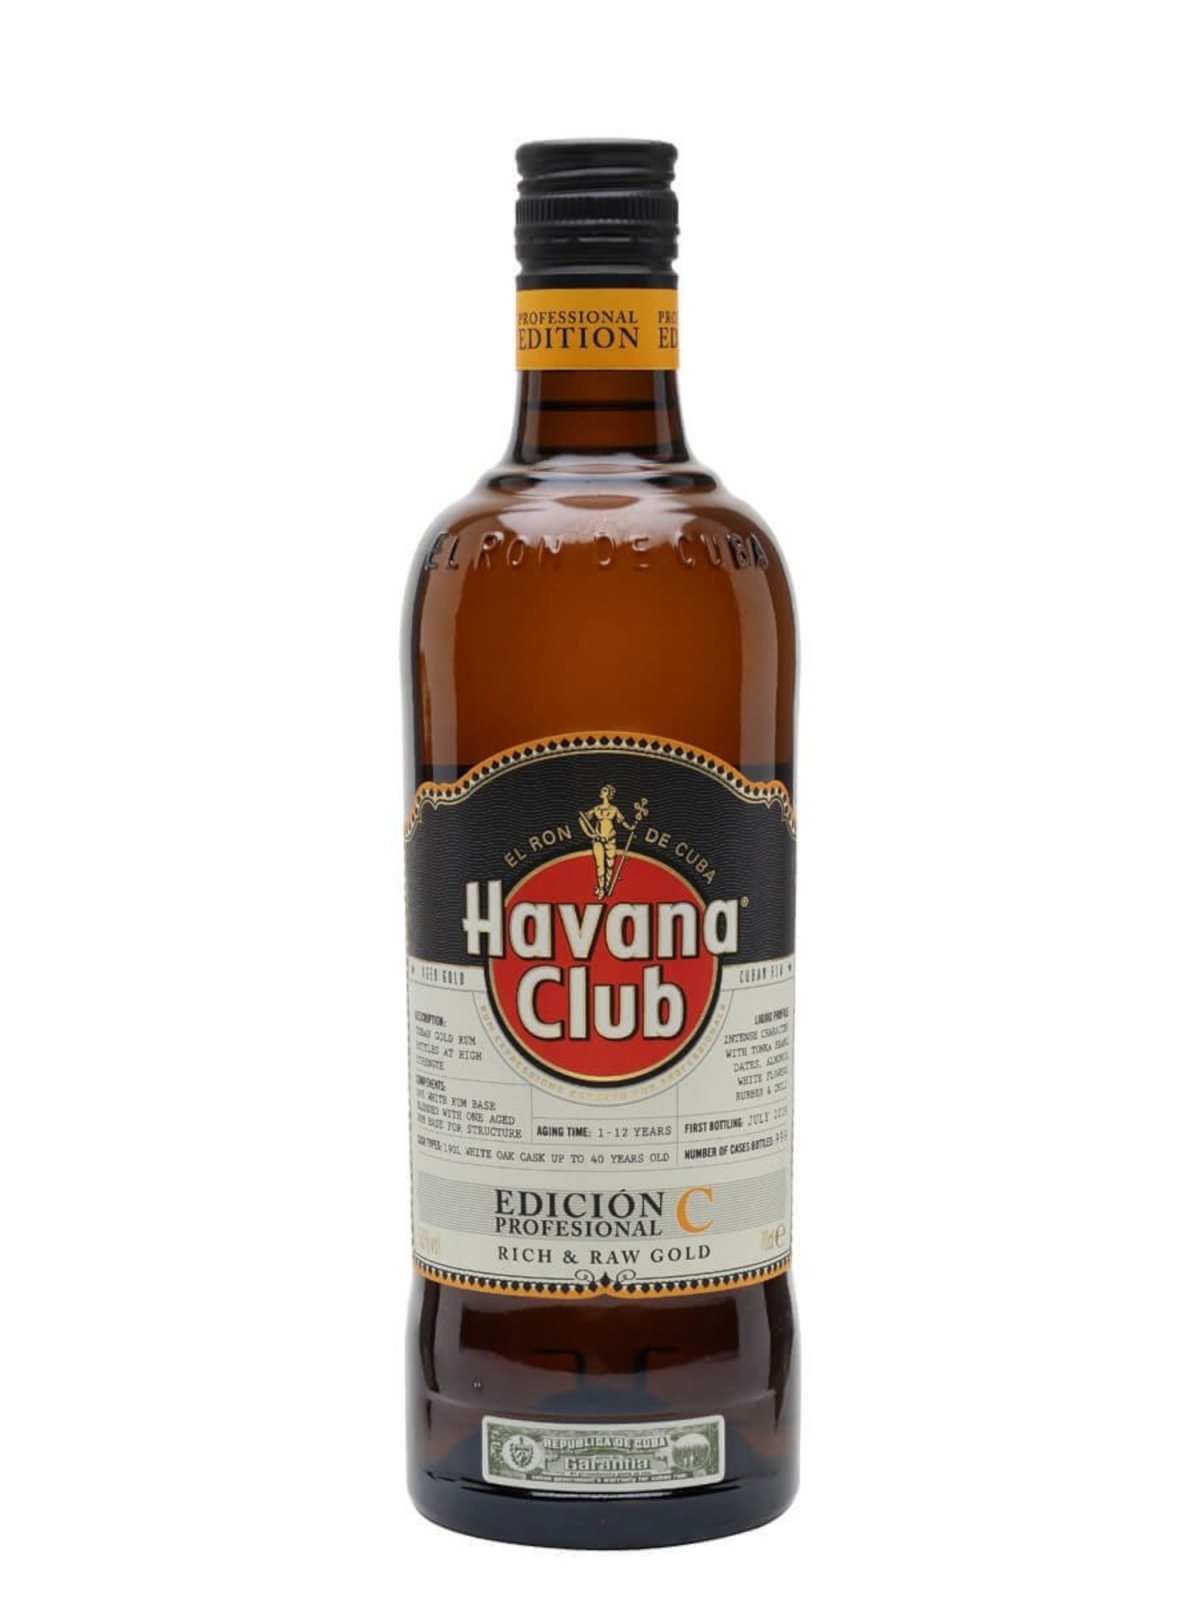 Botella de Havana Club Edición C